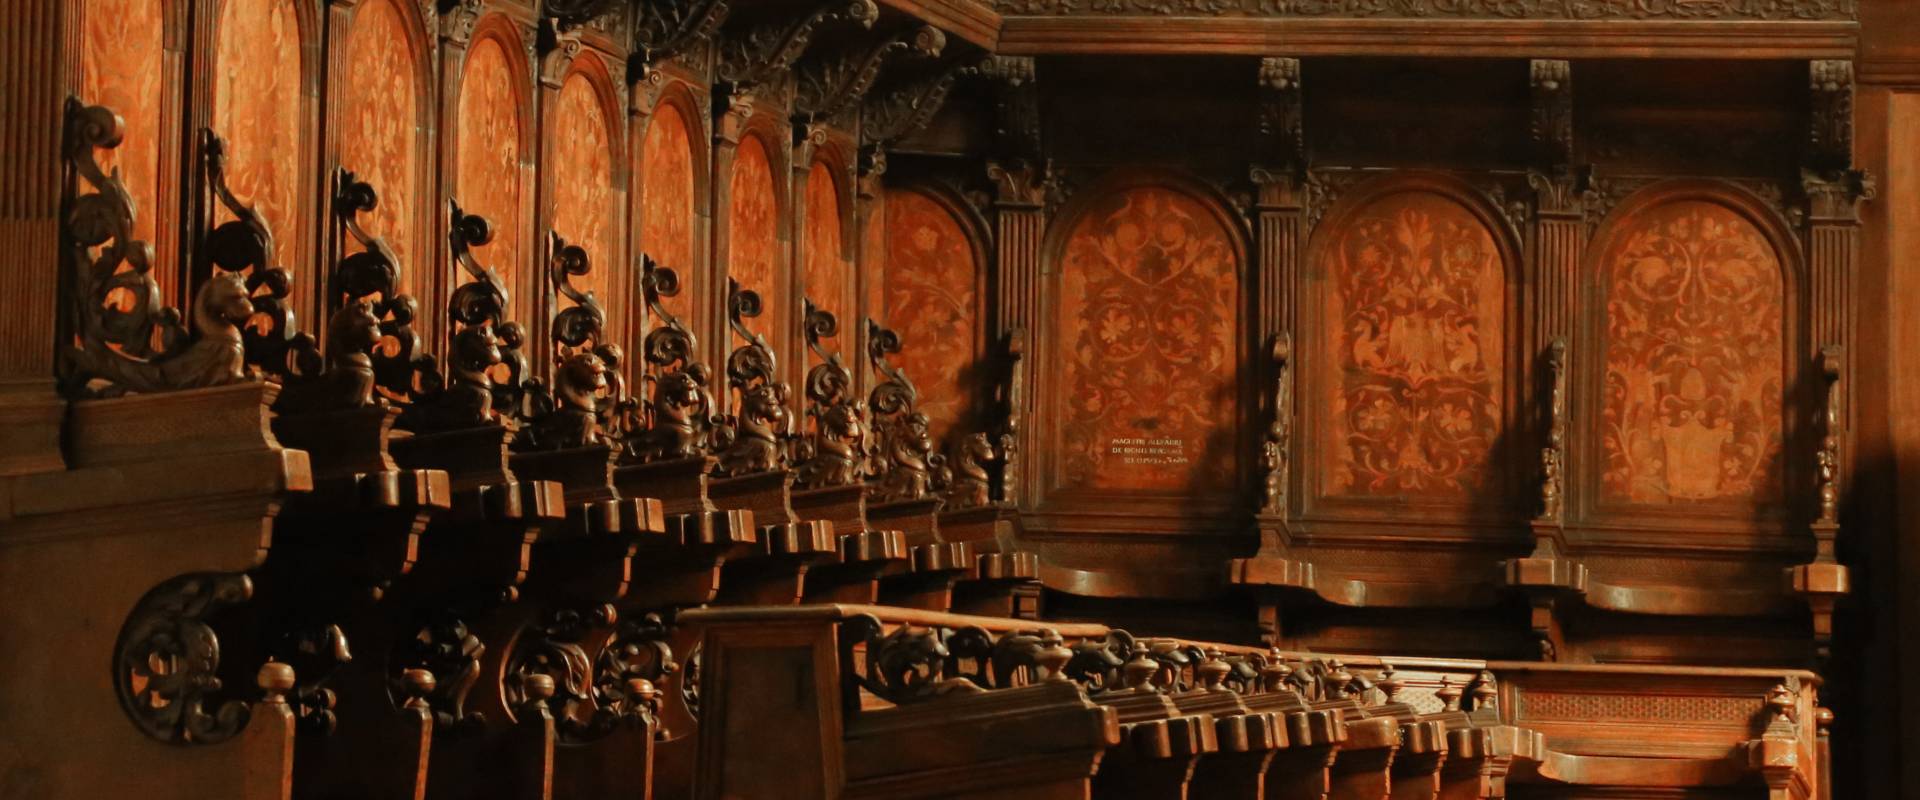 Alessandro begni, coro di san mercuriale, 1532-35, 02 foto di Sailko